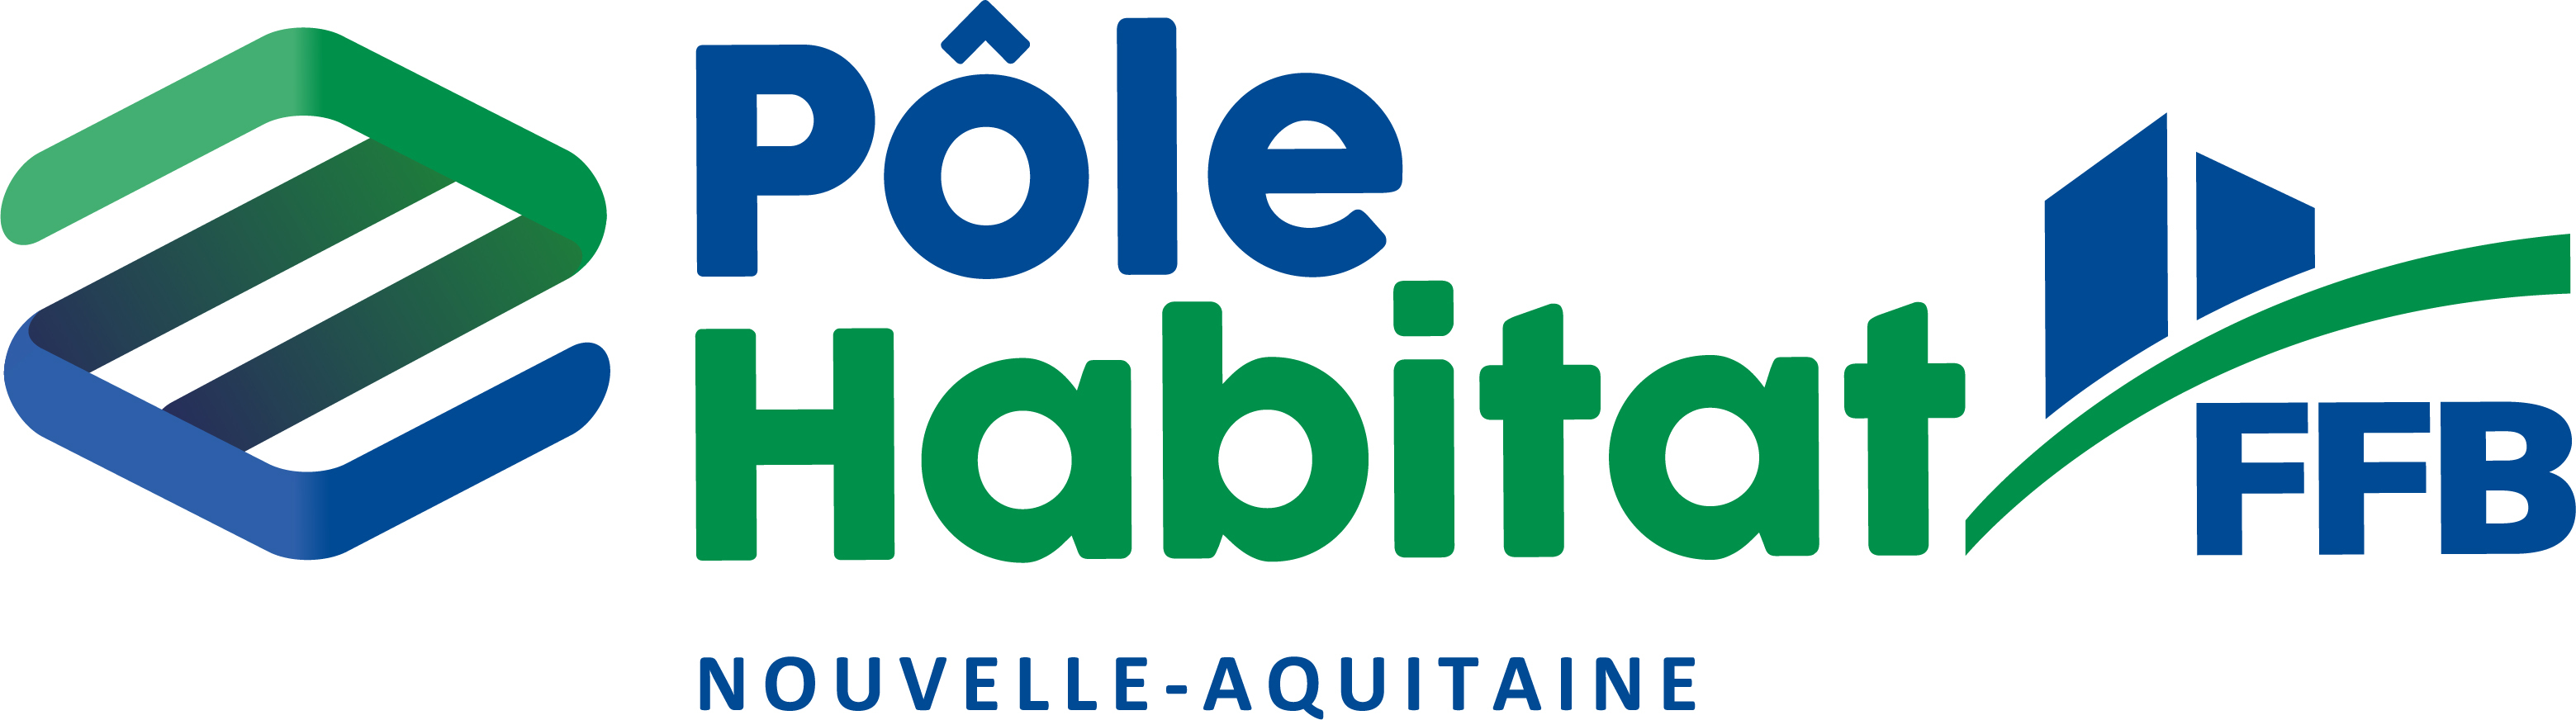 Logos Pôle Habitat FFB régions - NOUVELLE-AQUITAINE - RVB - 300dpi